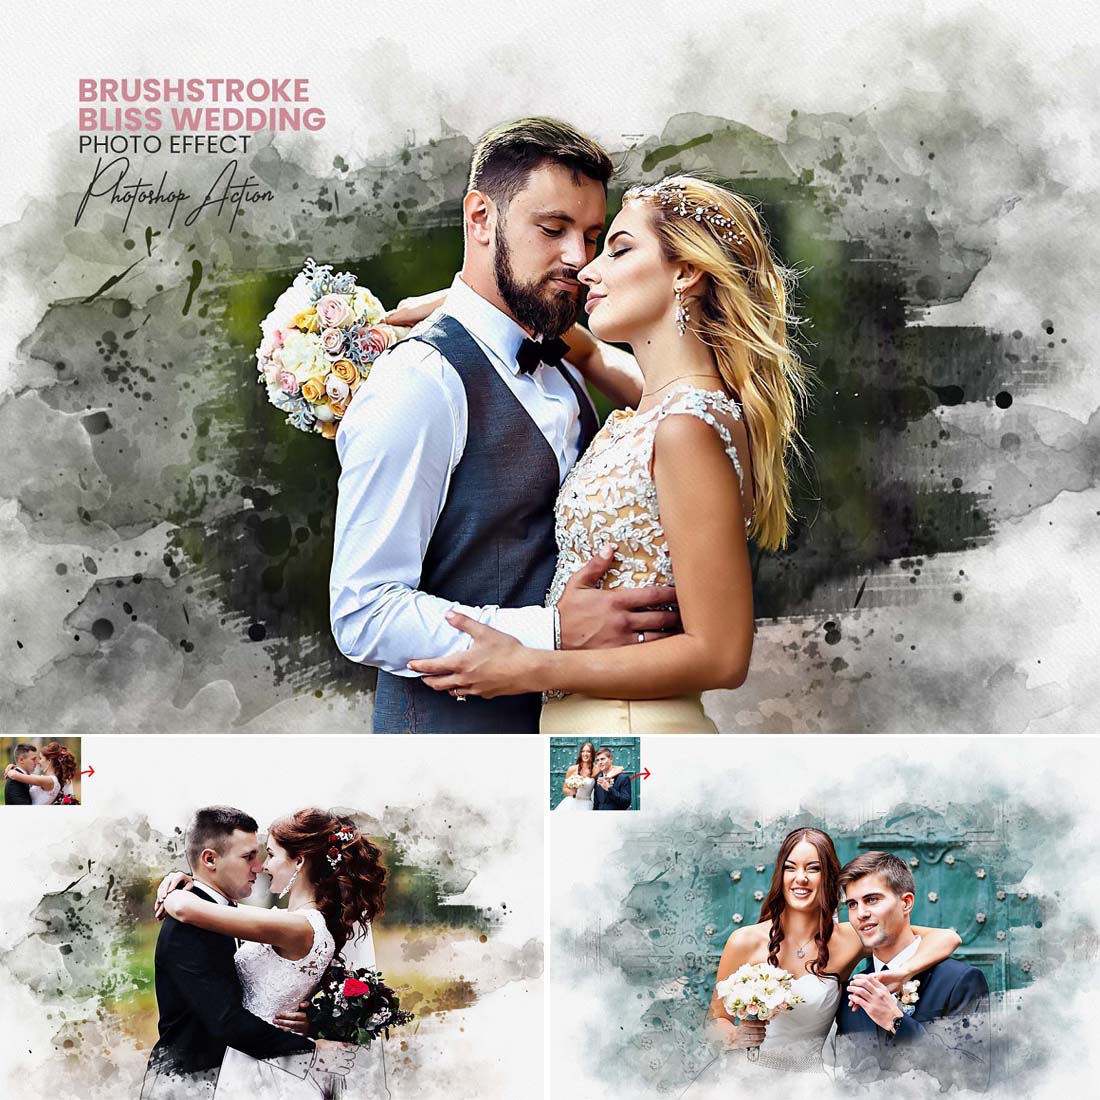 Brushstroke Bliss Wedding Action cover image.